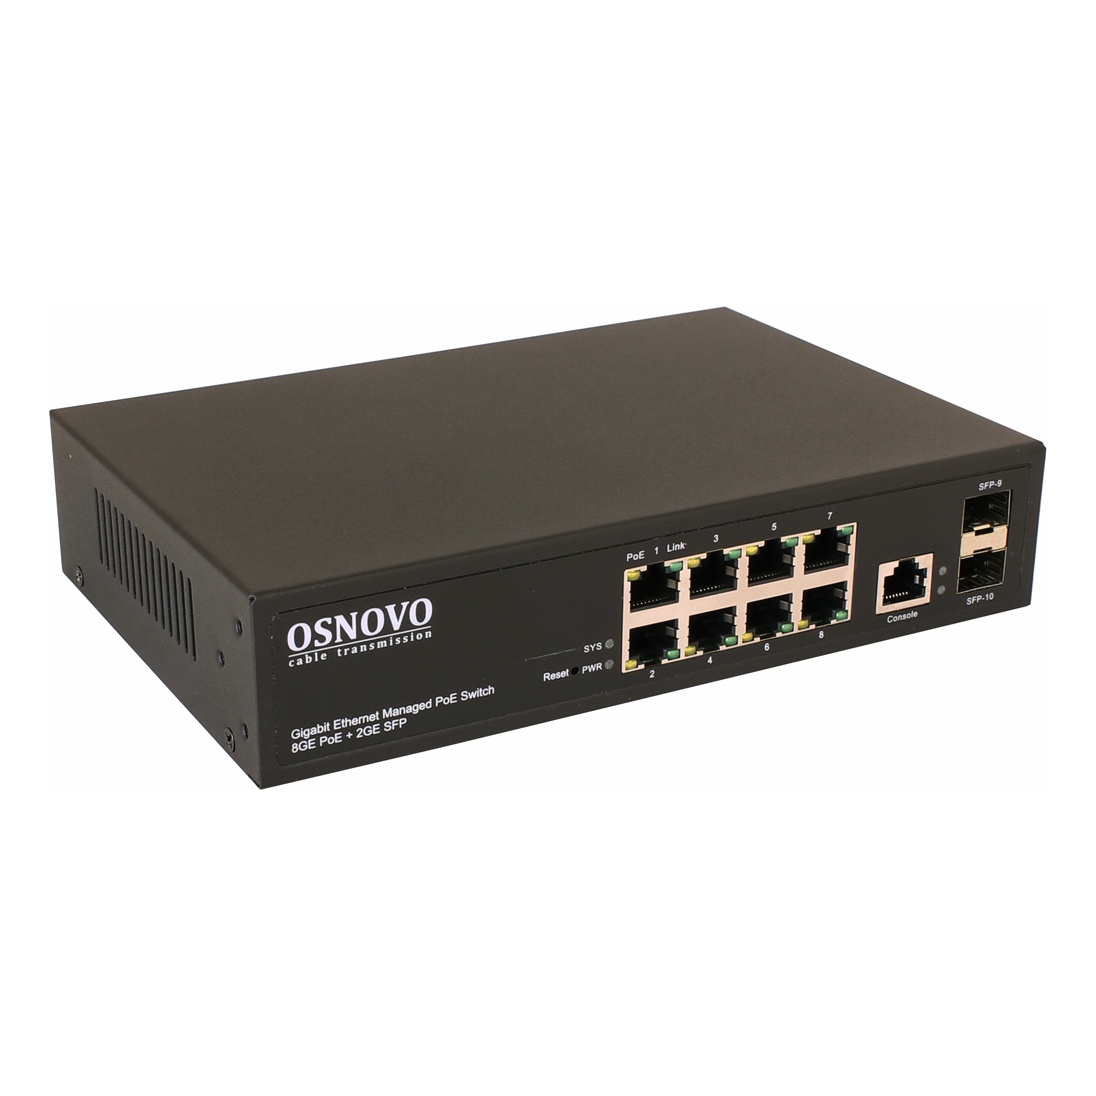 OSNOVO SW-80802/L(150W) SW-80802/L(150W) Управляемый L2 PoE коммутатор Gigabit Ethernet на 8 RJ45 PoE + 2 x GE SFP порта